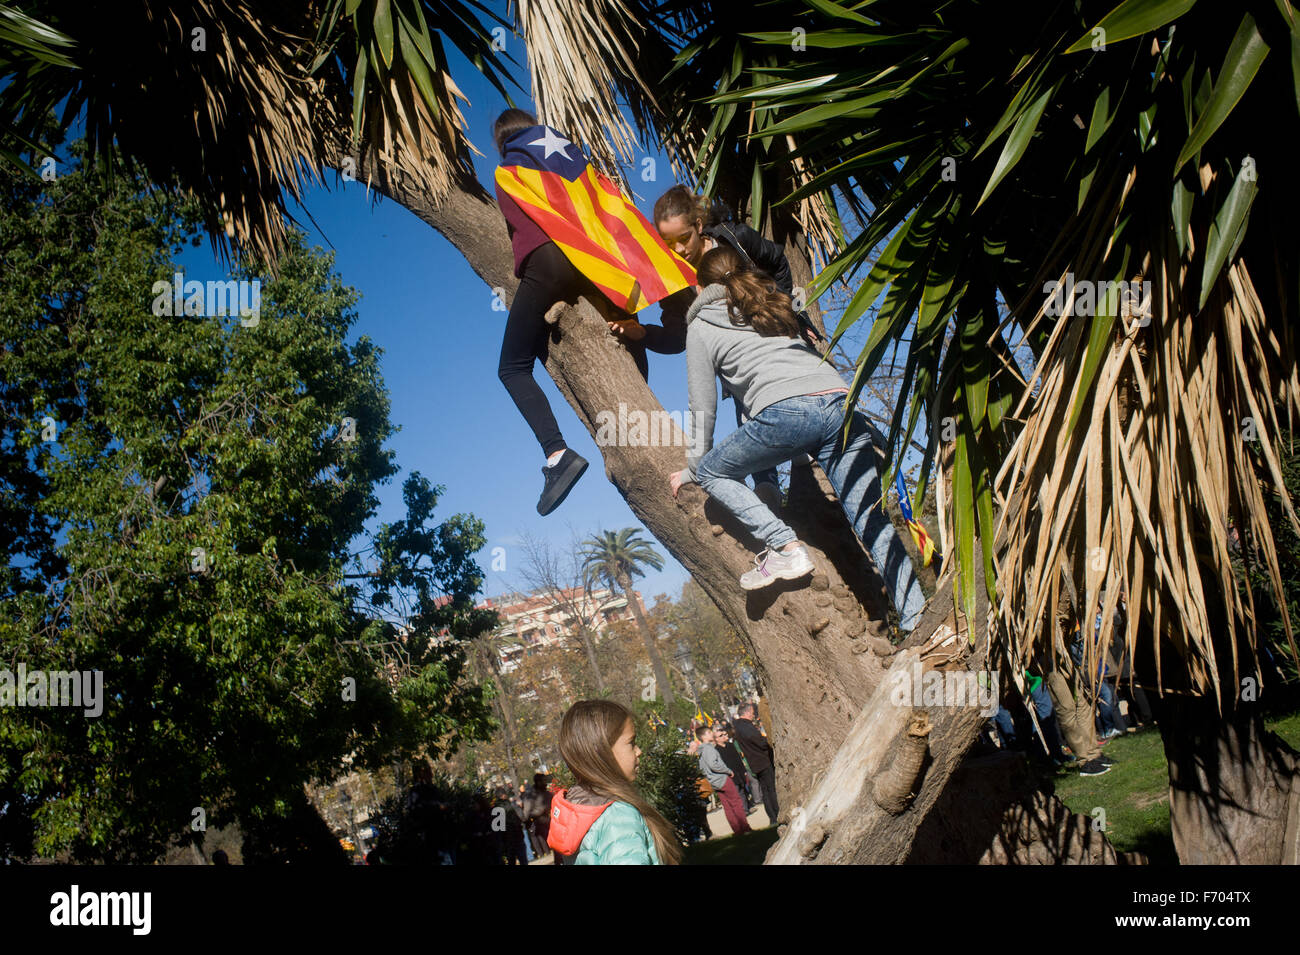 Barcelone, Espagne. 22 Nov, 2015. En ce dimanche ensoleillé les enfants grimper à un arbre portant un drapeau estelada (symbole de l'indépendance catalane) au Parc de la Ciutadella de Barcelone, Espagne, le 22 novembre, 2015. Plus de trois mille personnes se sont rassemblées dans le Parc de la Ciutadella à Barcelone exigeant un accord entre les deux partis indépendantistes dans le Parlement Catalan (Pel Junts tr et cuvette). L'impossibilité d'élire un président pour le Parlement Catalan a bloqué le processus d'indépendance. Crédit : Jordi Boixareu/Alamy Live News Banque D'Images